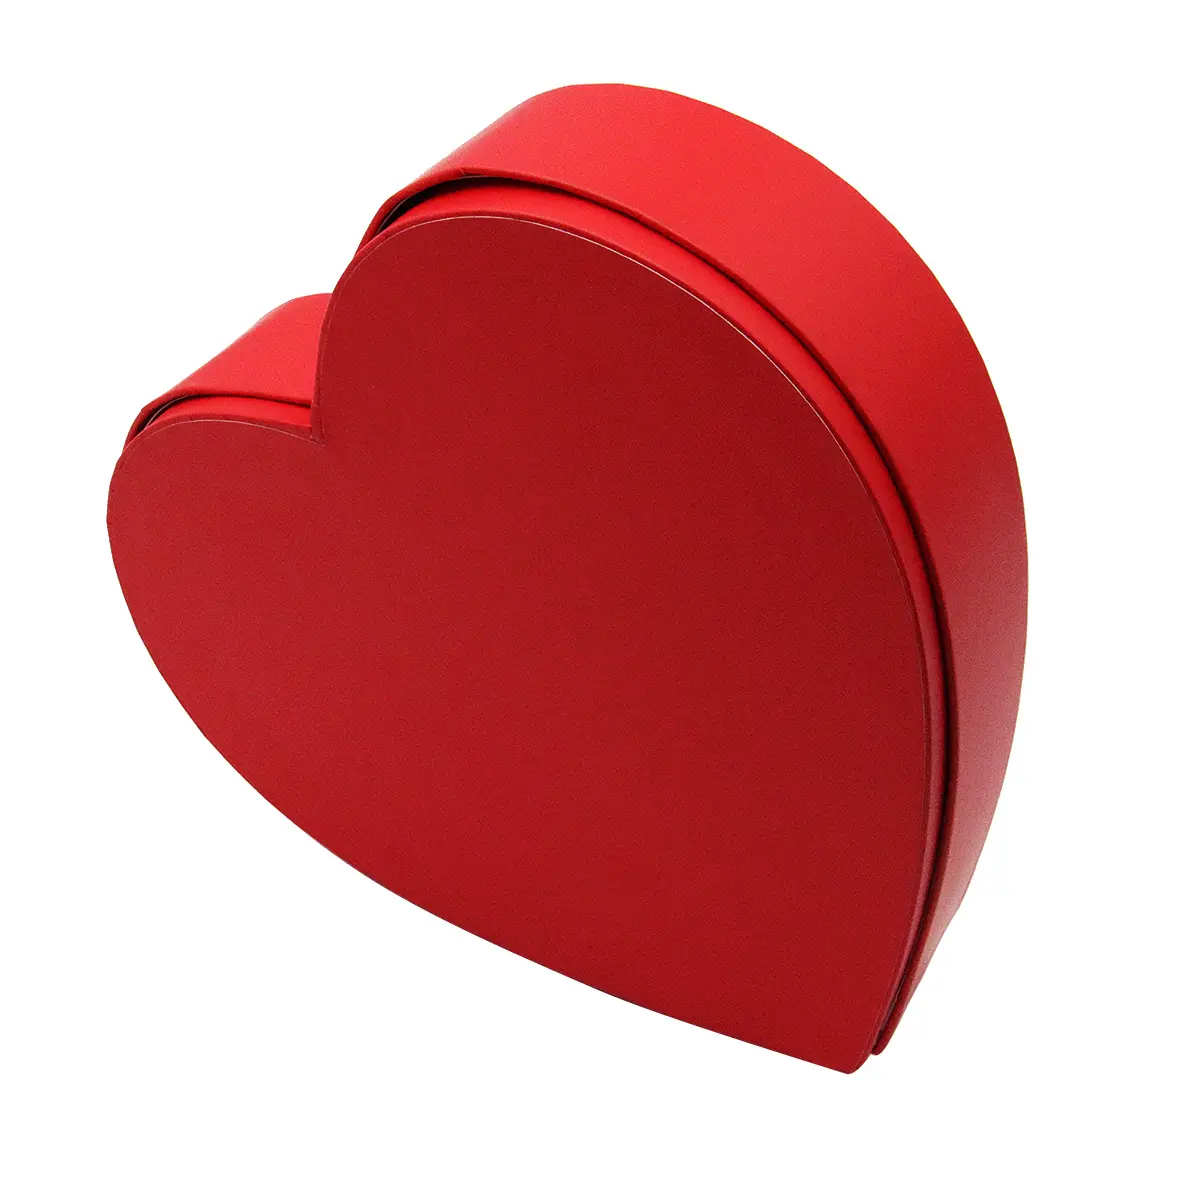 Caja de papel roja con forma de corazón para regalo, gran oferta, con tarjeta de regalo